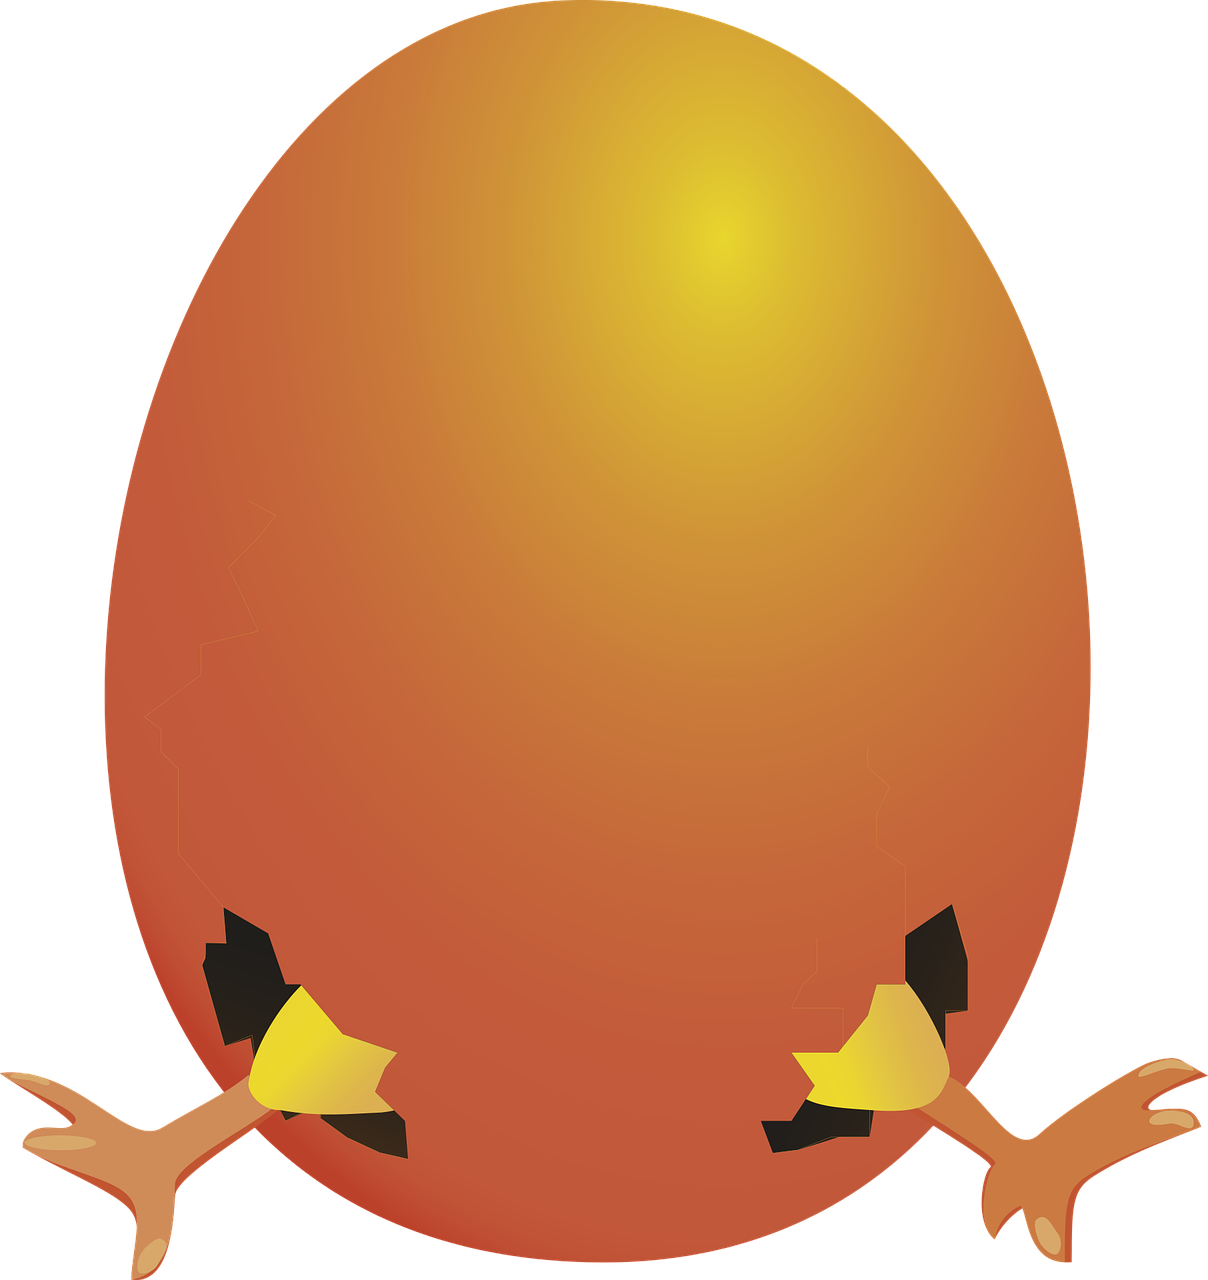 Huevo con patas